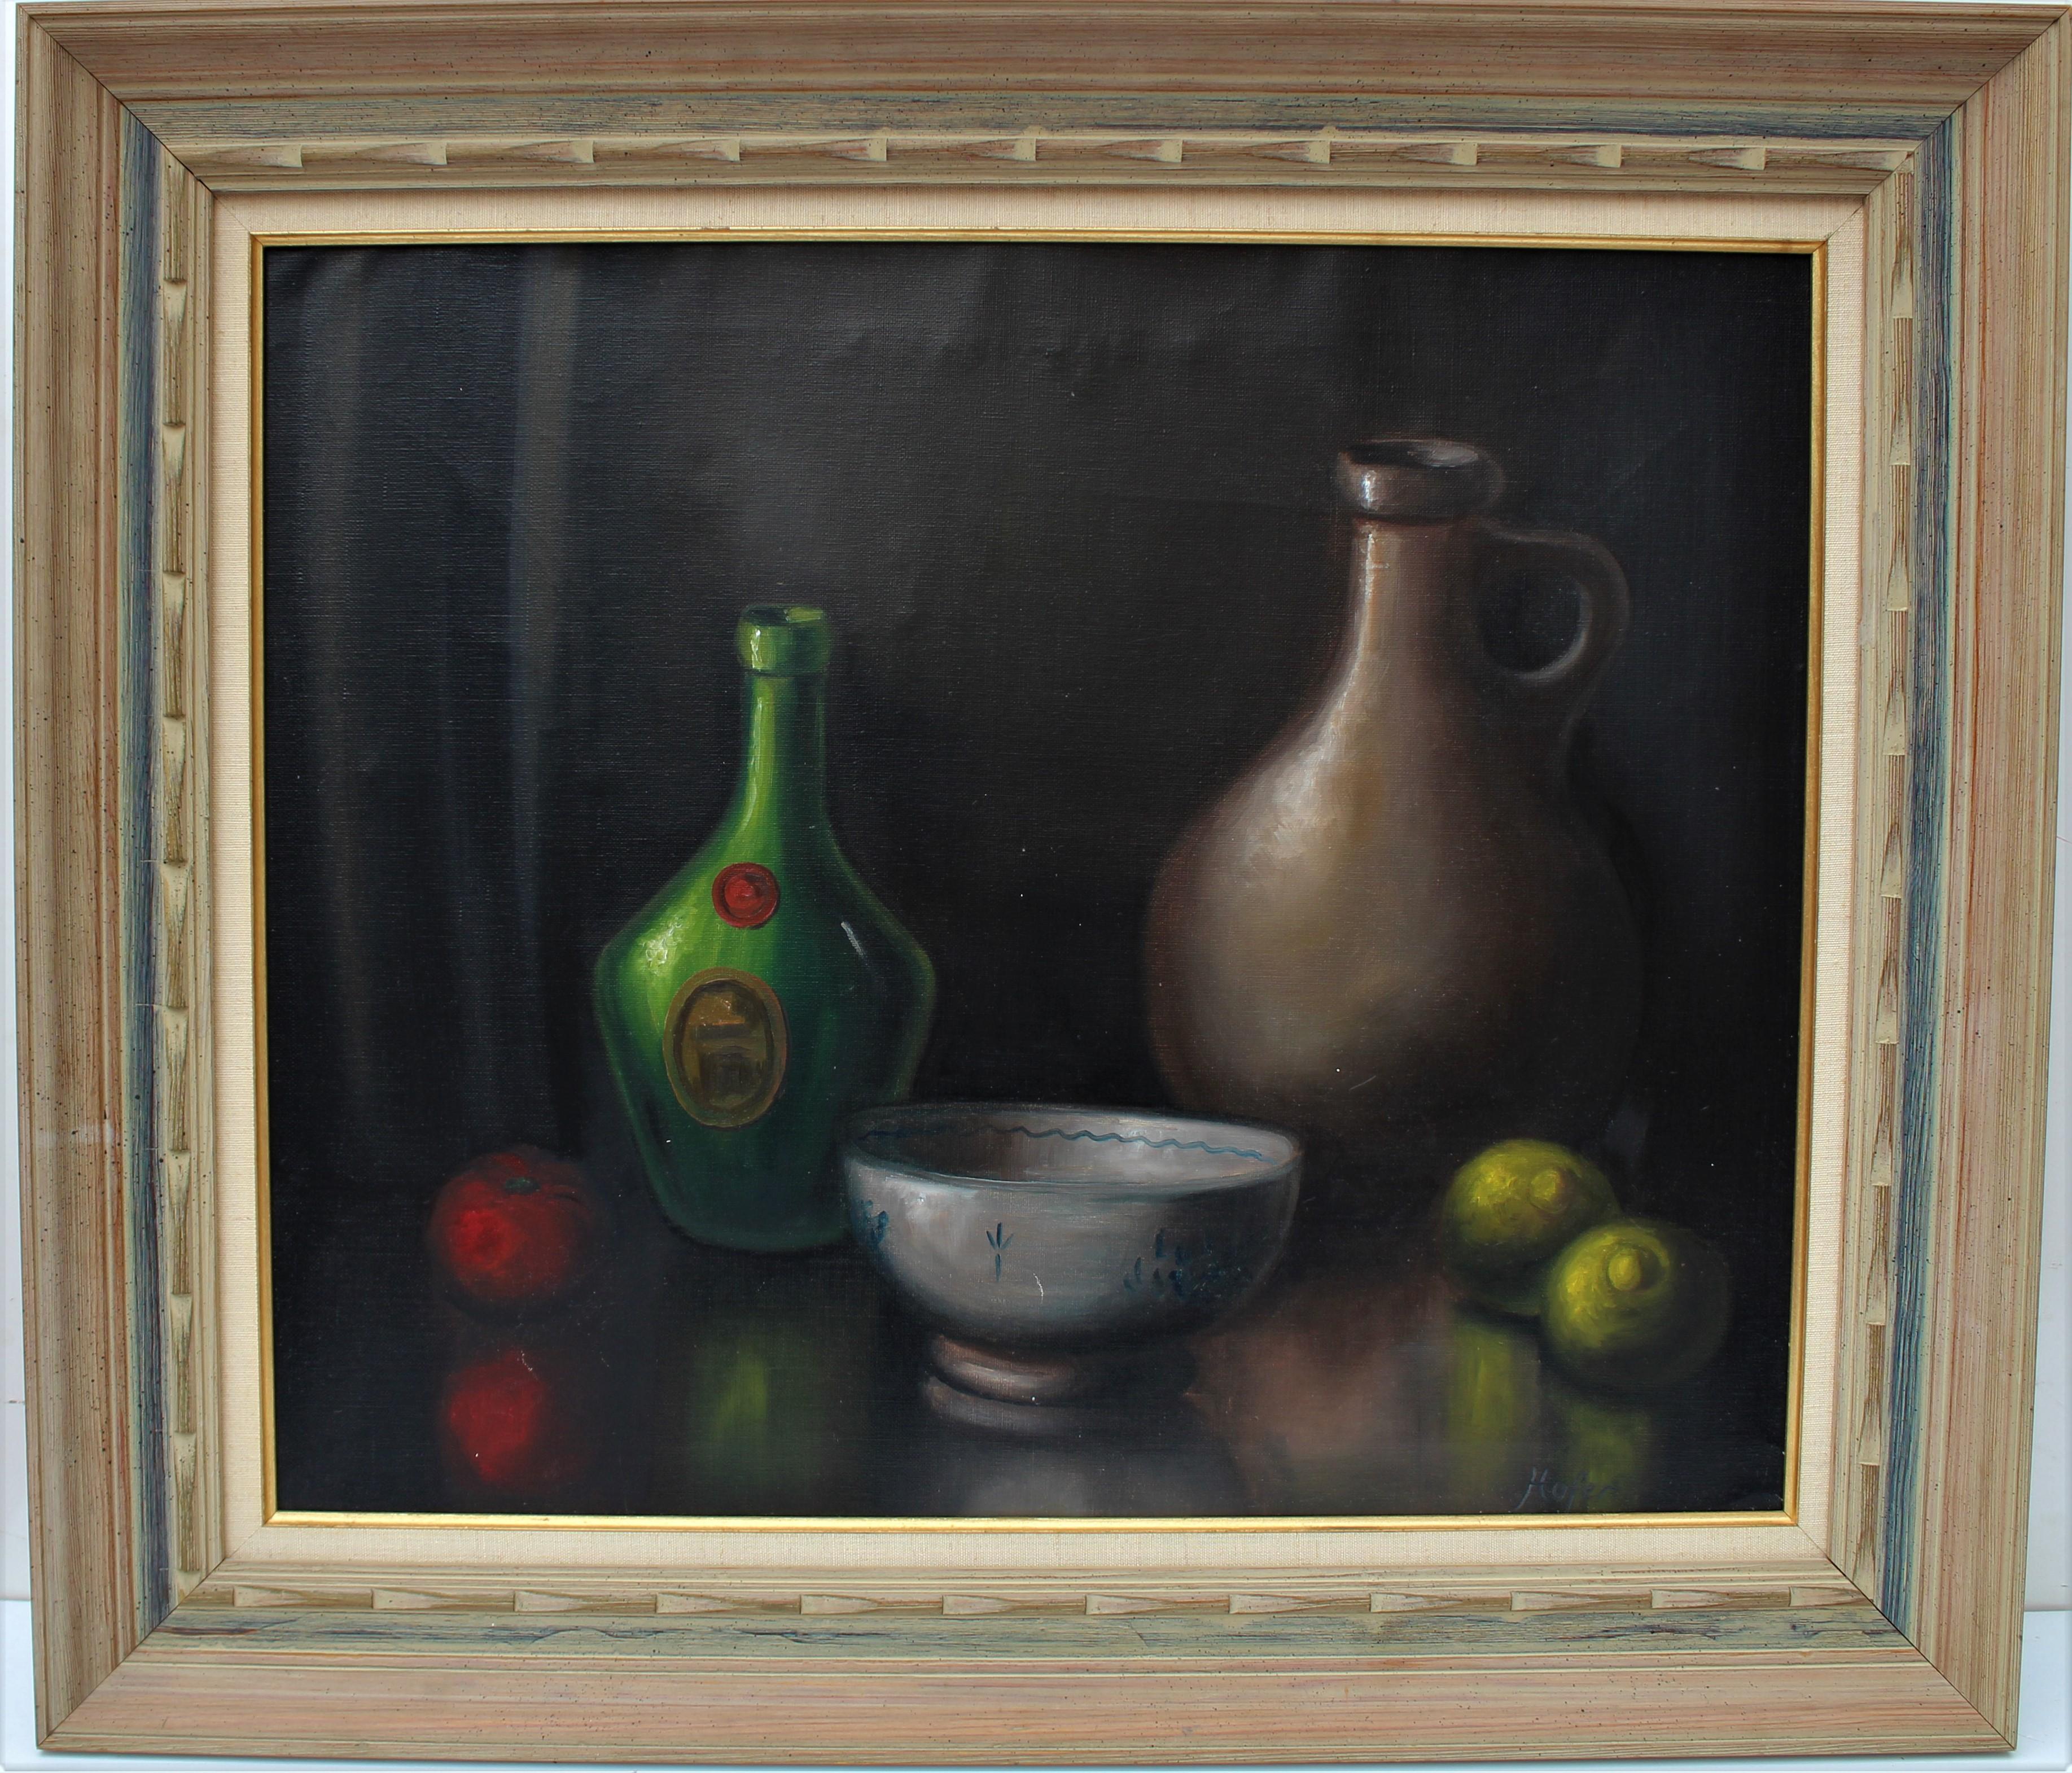 Il s'agit d'un modèle original d'époque.  Nature morte à l'huile sur toile représentant un bol vide, une bouteille de vin, une cruche en terre cuite, une pomme rouge et deux citrons sur une table. 

Présenté dans un joli cadre en bois avec une